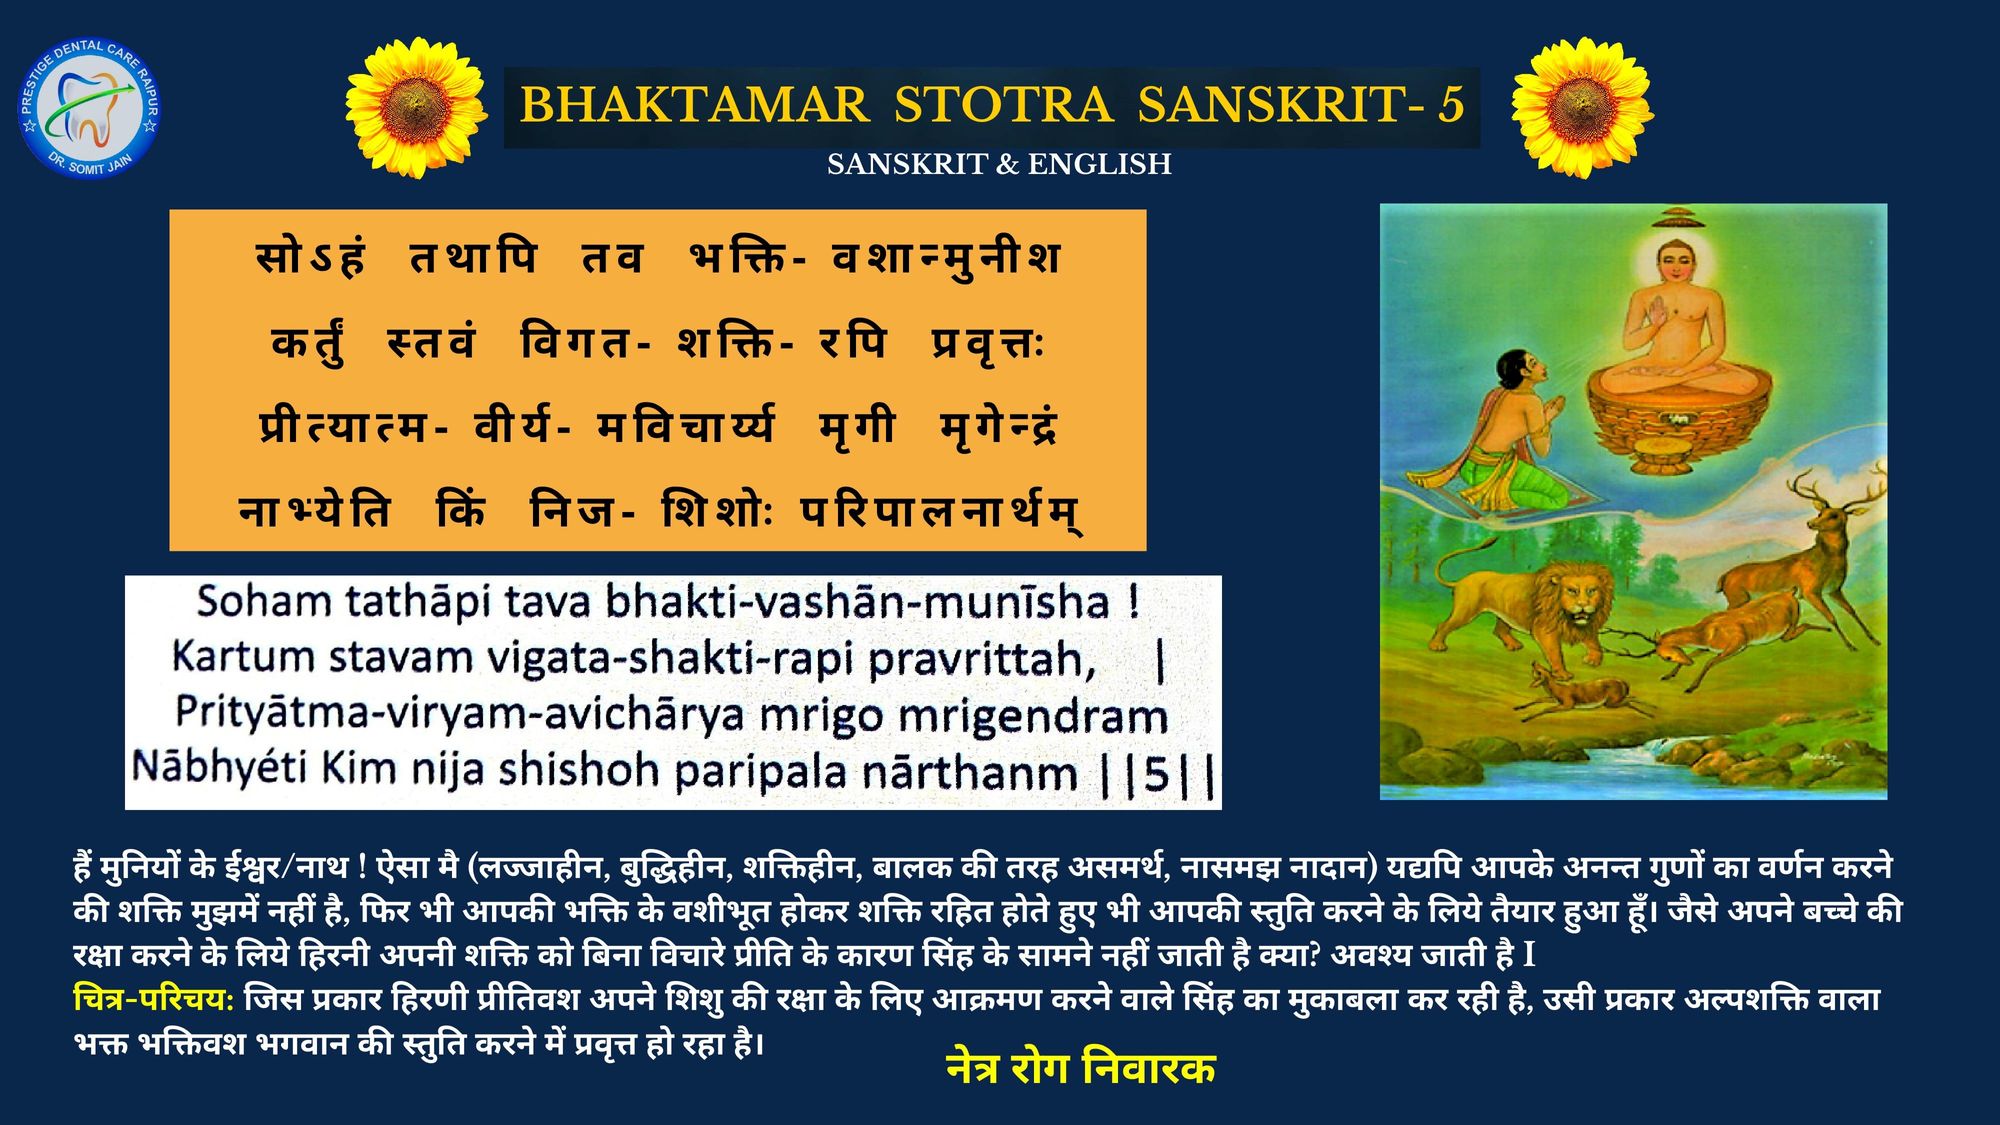 BHAKTAMAR STOTRA-5 SANSKRIT & ENGLISH